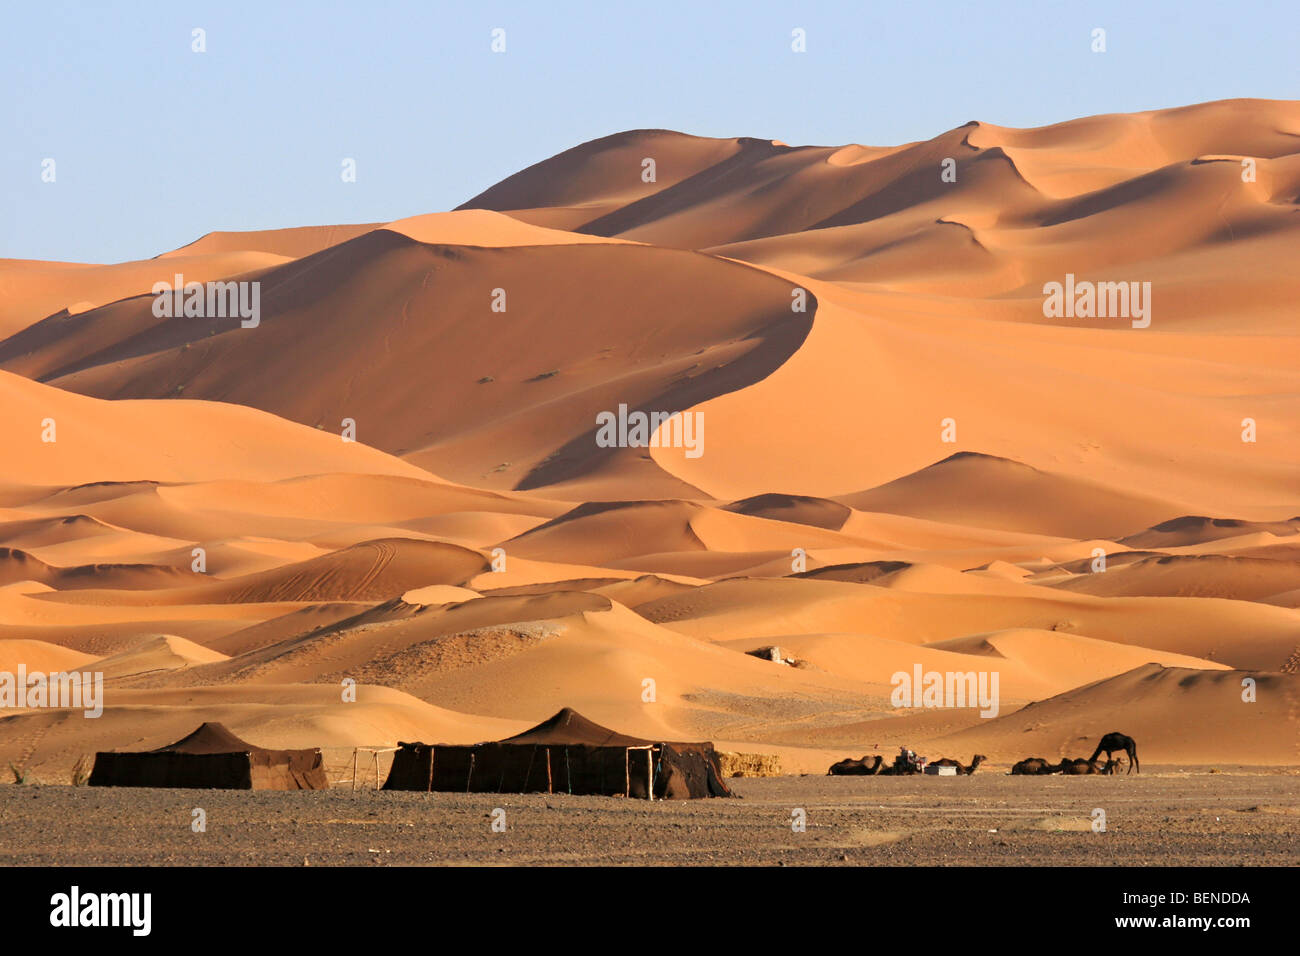 Tenda beduina e dromedario cammelli (Camelus dromedarius) tra le dune di sabbia rossa, Erg Chebbi, il deserto del Sahara, Marocco, Africa del Nord Foto Stock